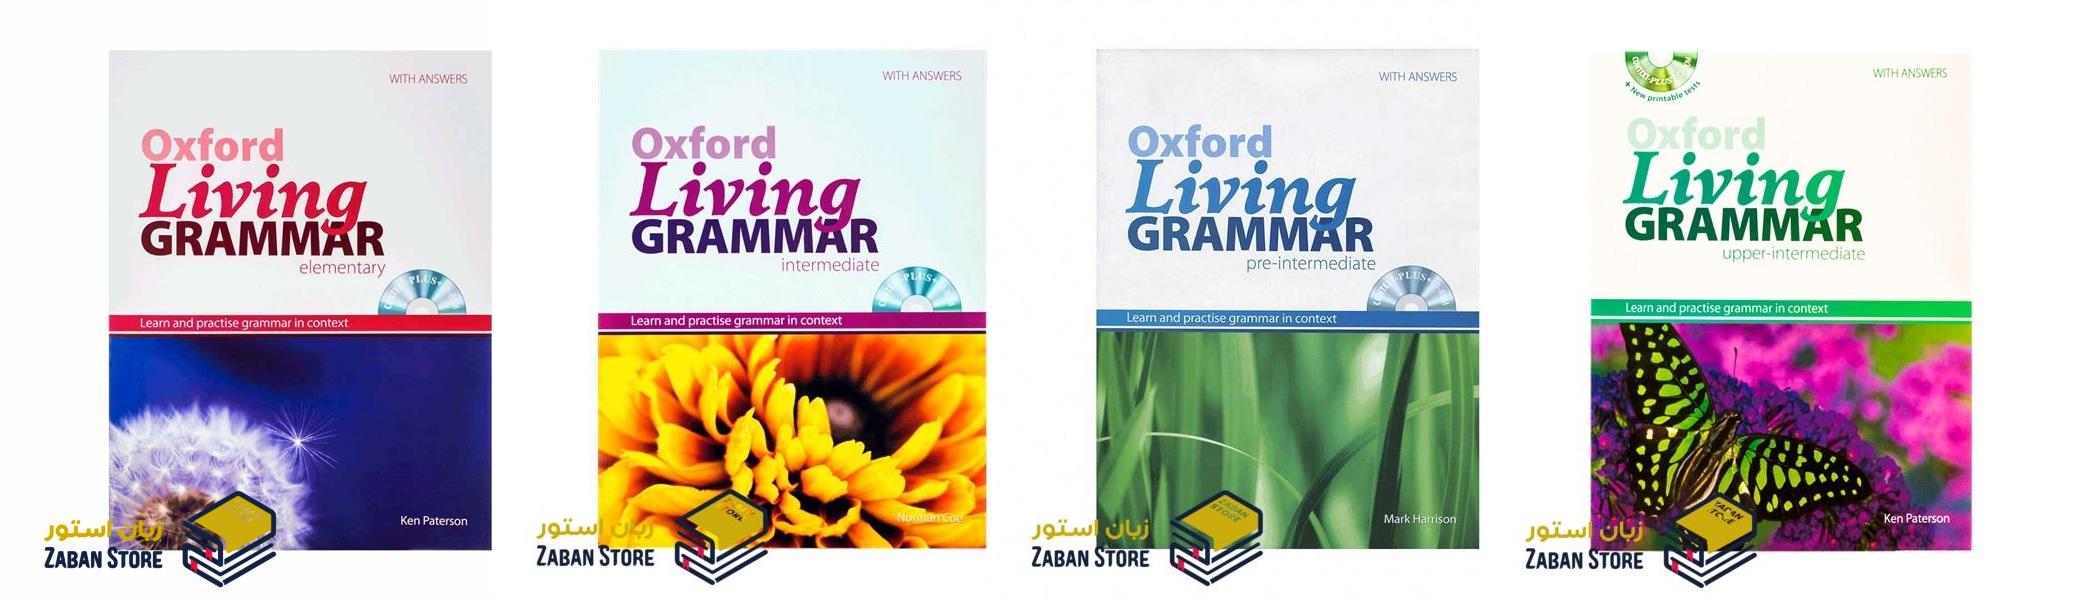 خرید کتاب زبان | کتاب زبان اصلی | Oxford Living Grammar | آکسفورد لیوینگ گرامر